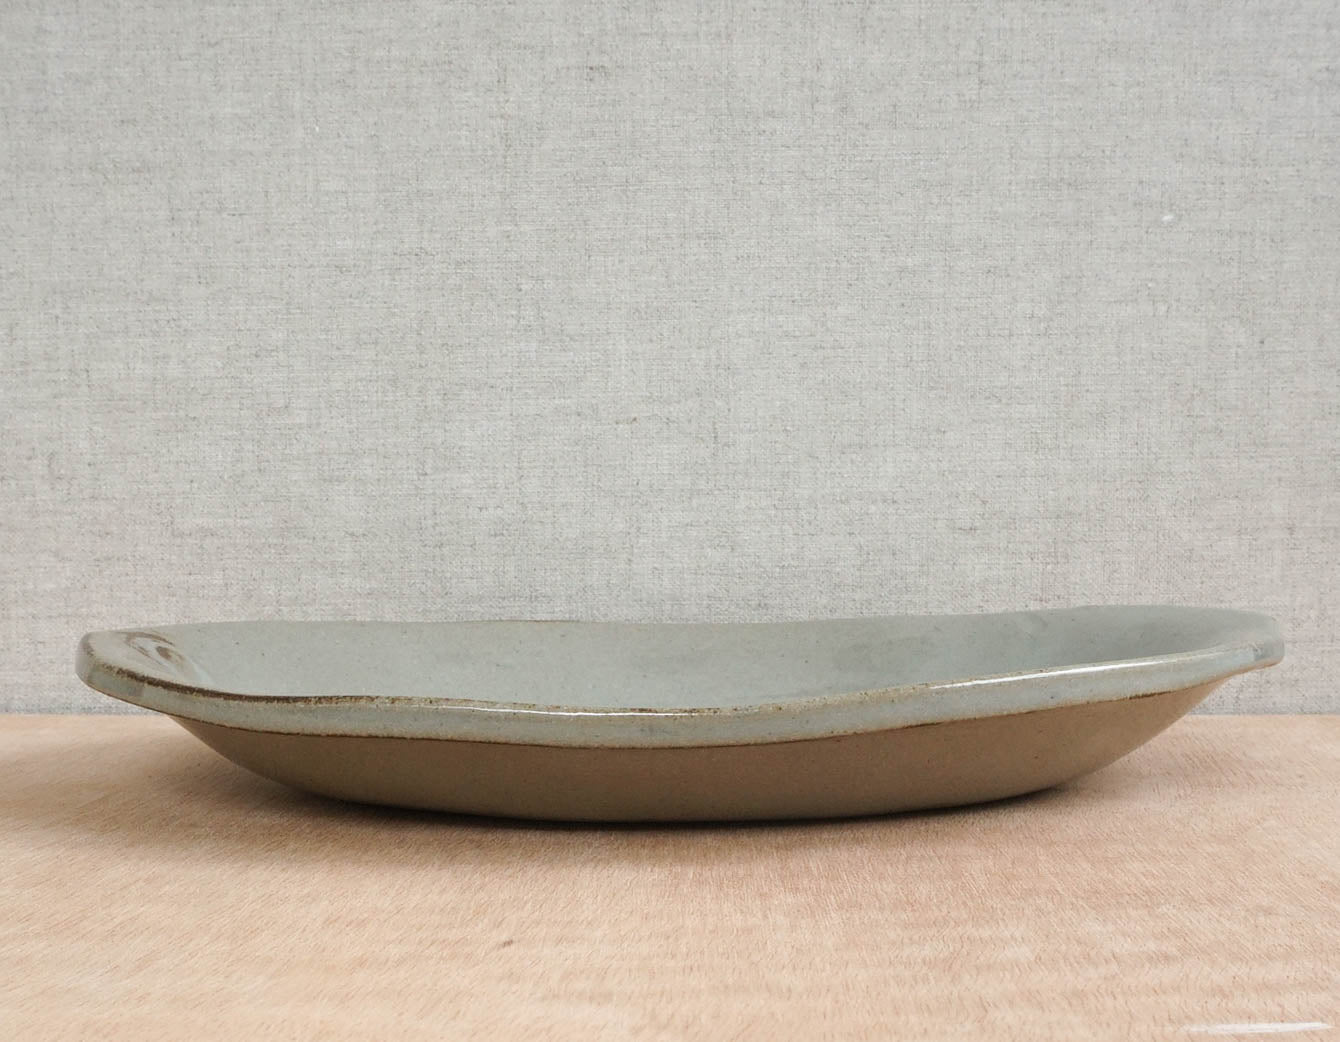 Oval-shaped plate